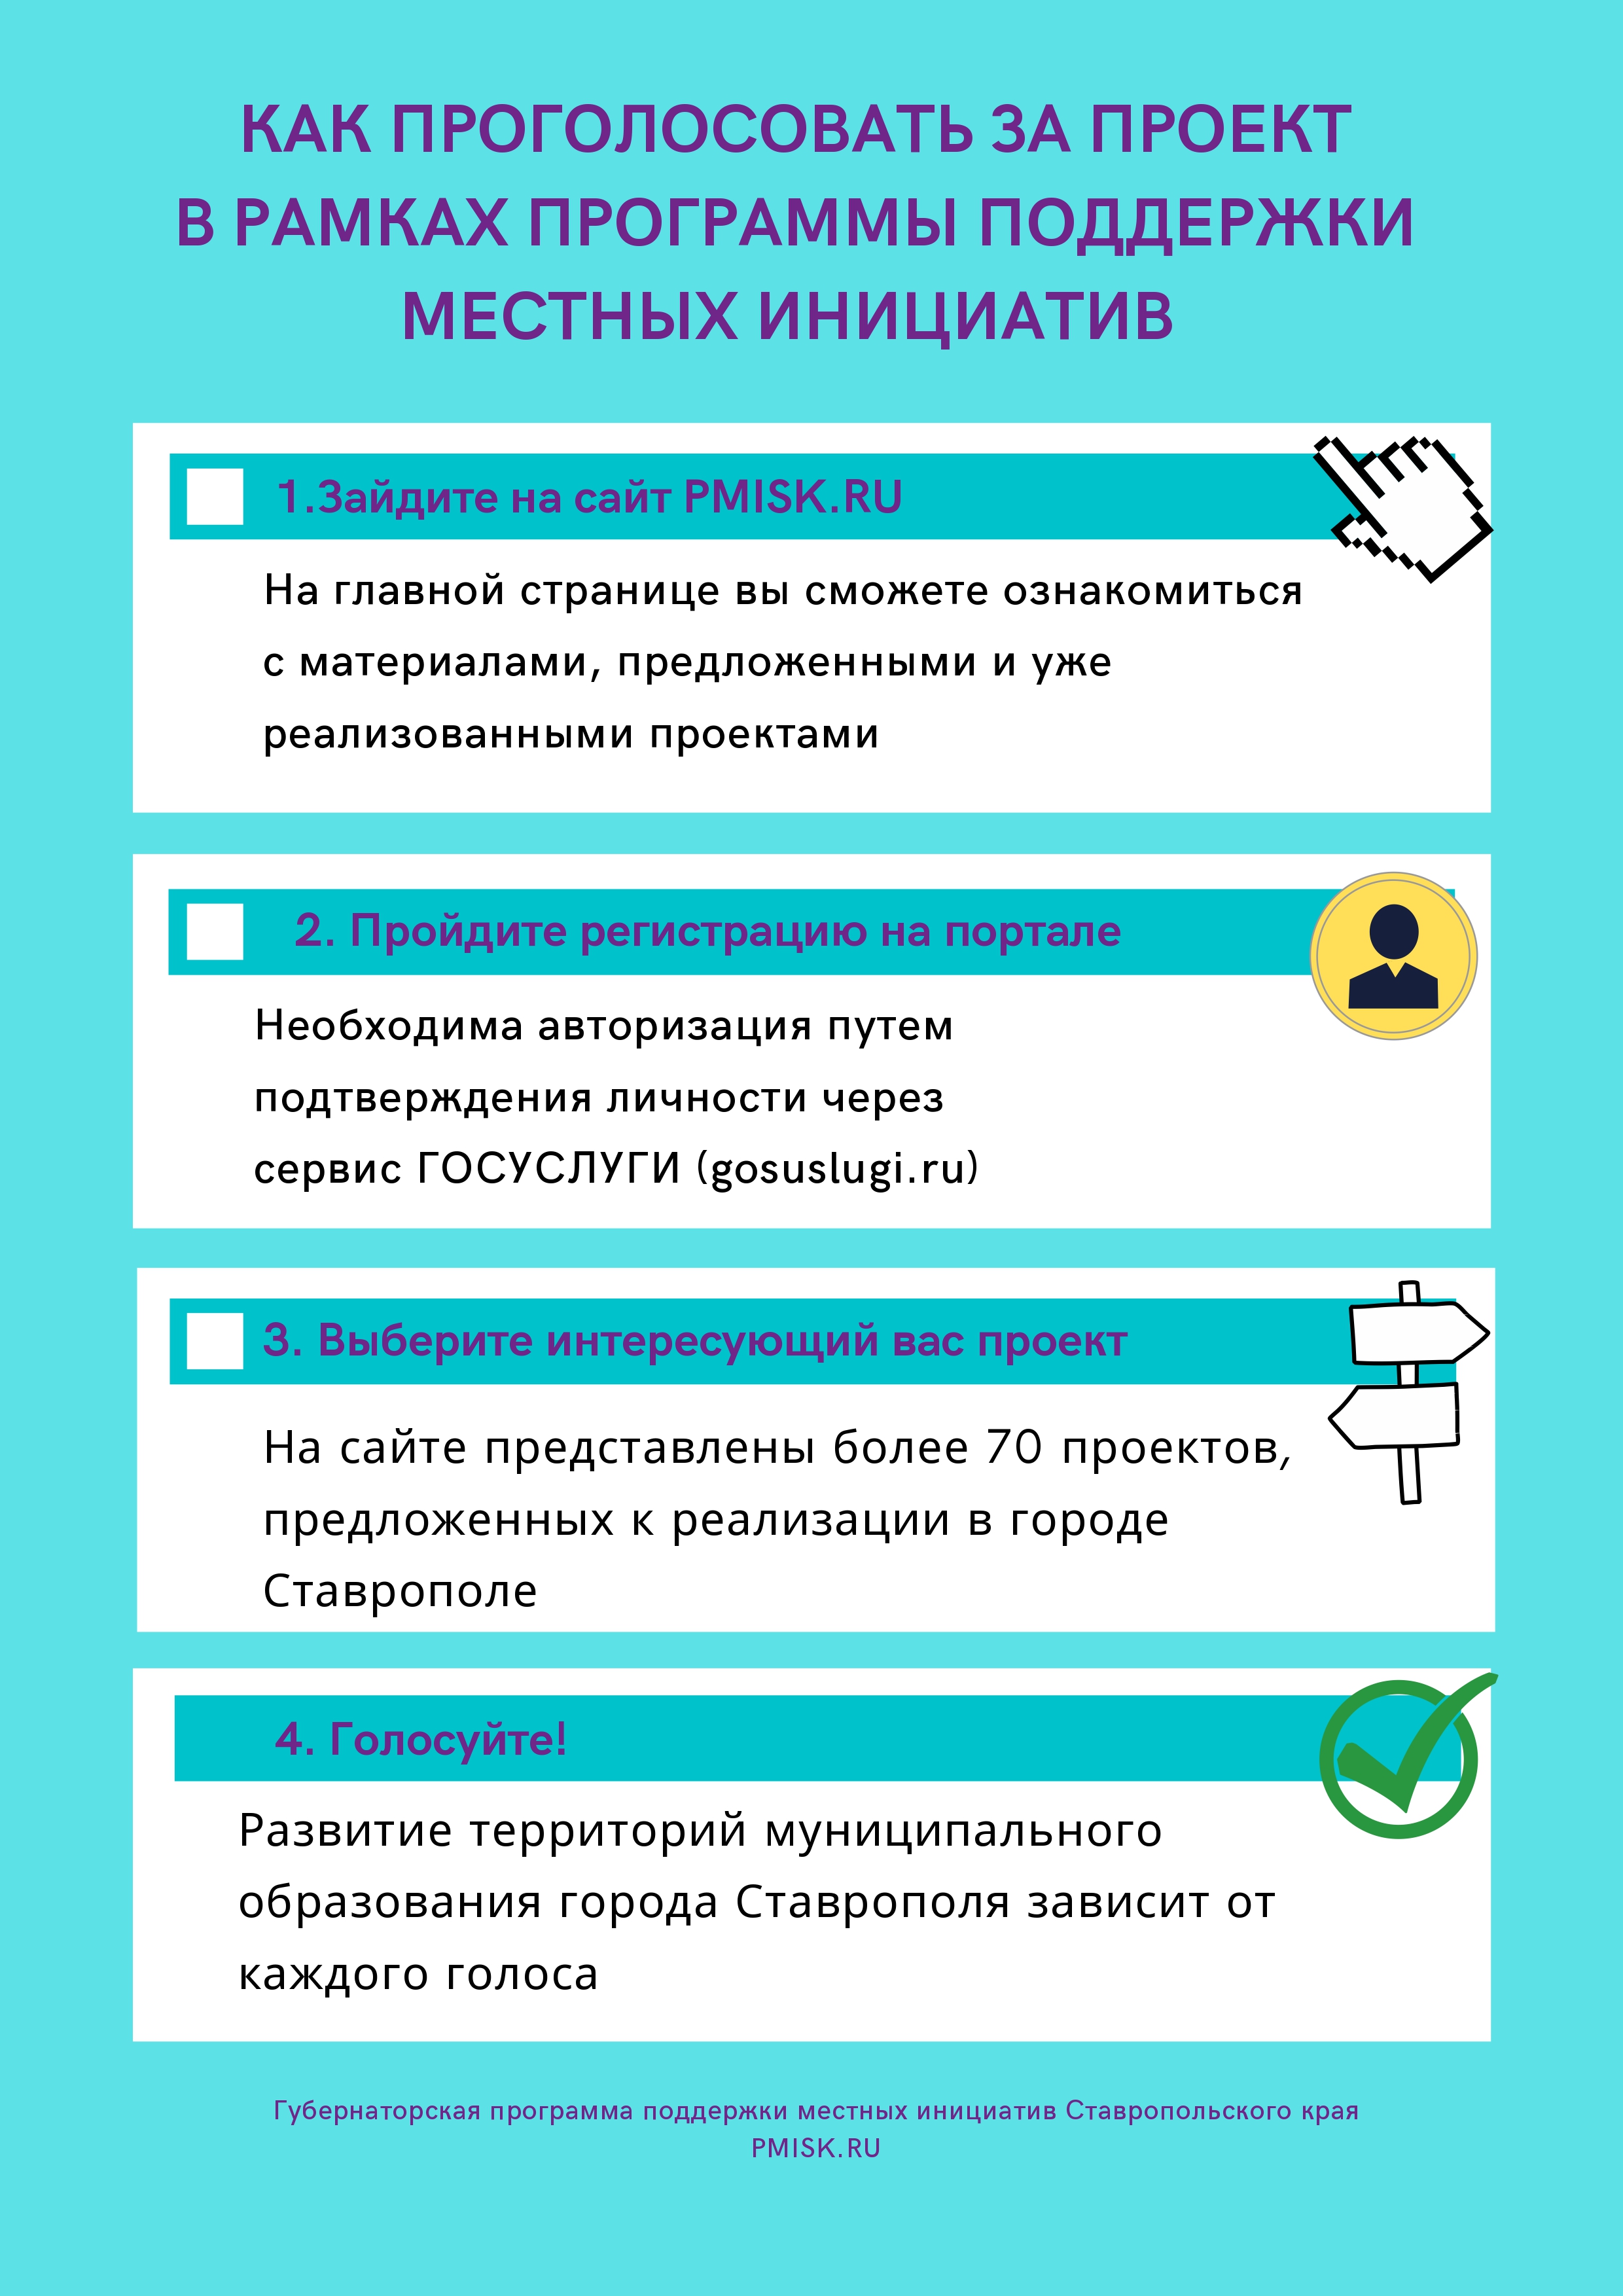 Инструкция по голосованию на портале Губернаторской программы поддержки местных инициатив Ставропольского края